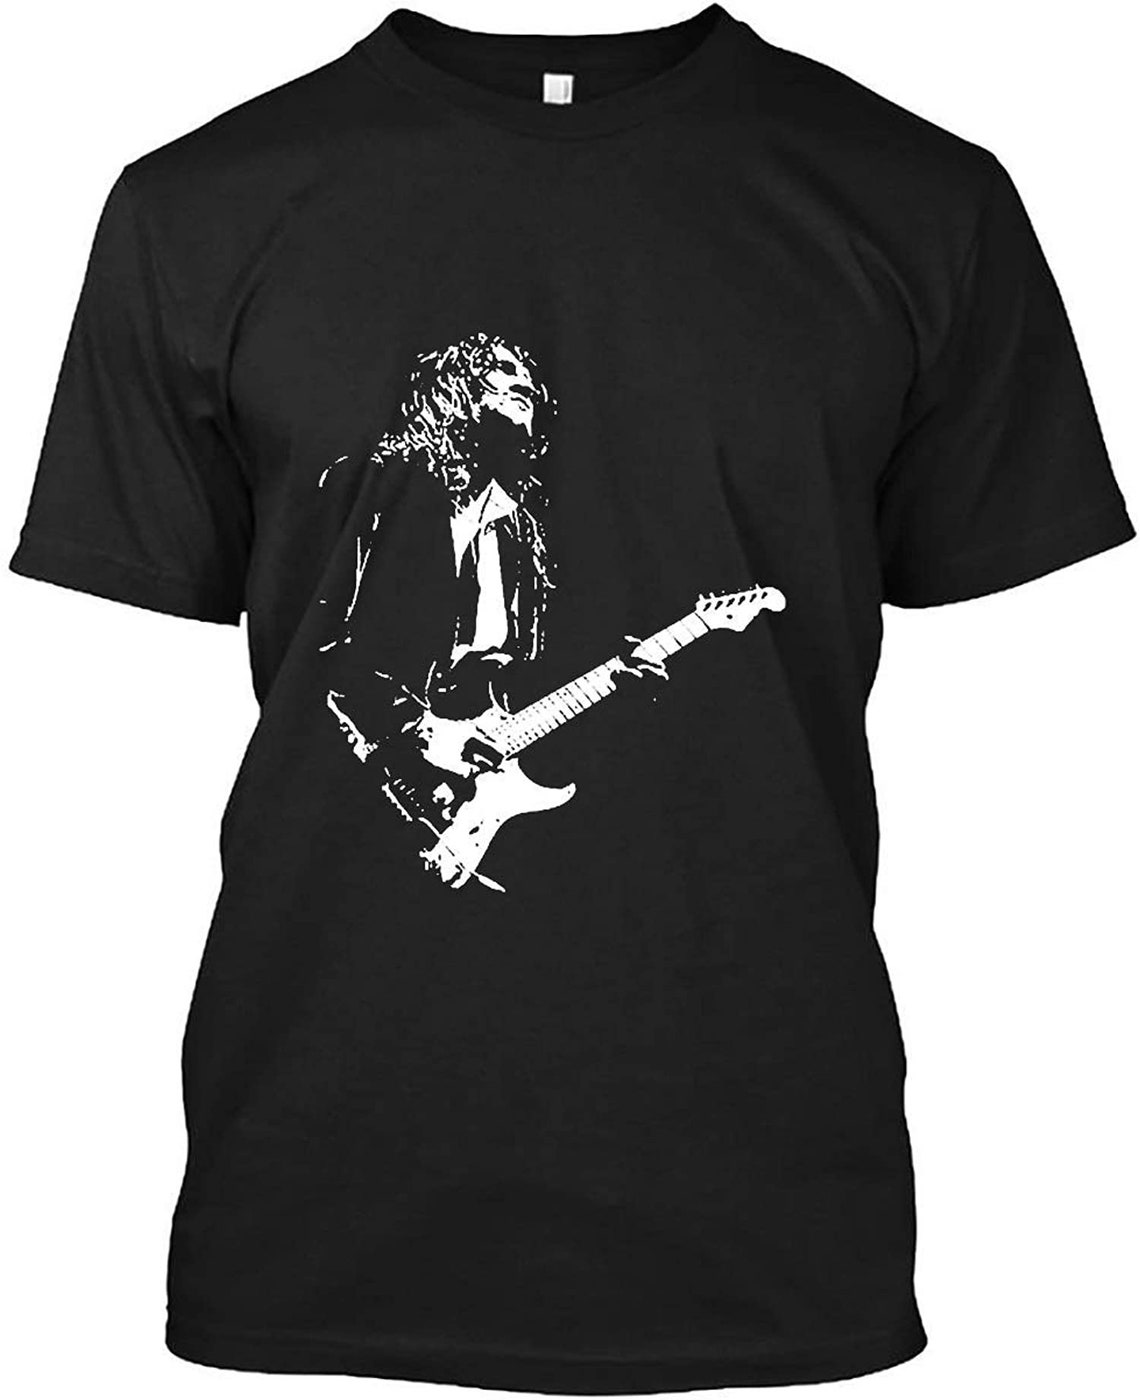 John Frusciante T Shirt for Men Women Unisex | Etsy